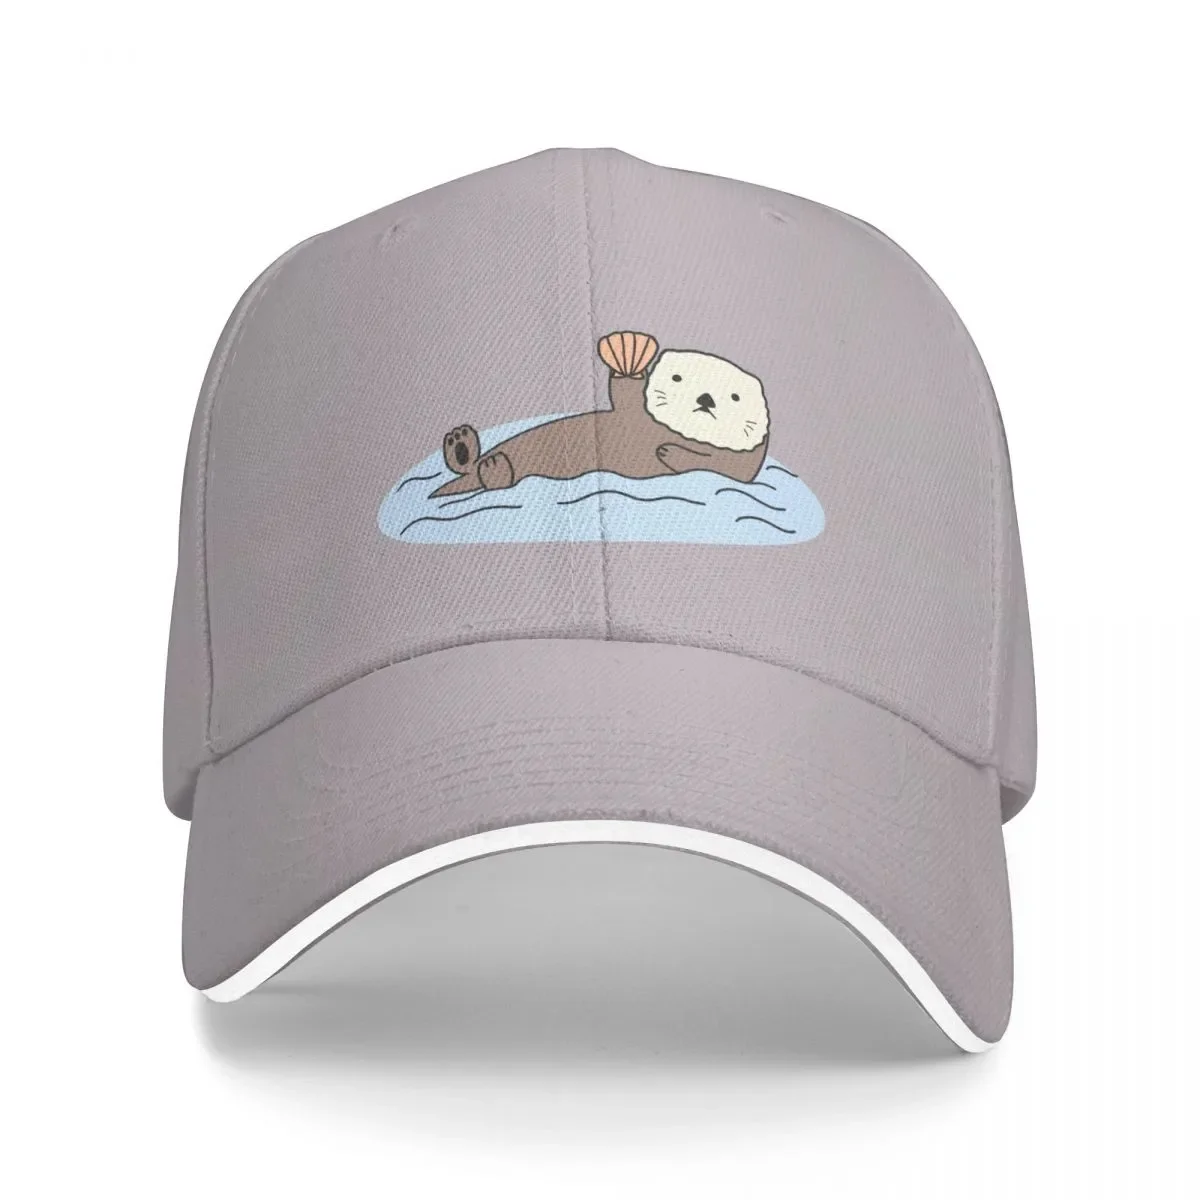 

New Cute Sea Otter Cap Baseball Cap new in hat gentleman hat trucker hat caps for women Men's